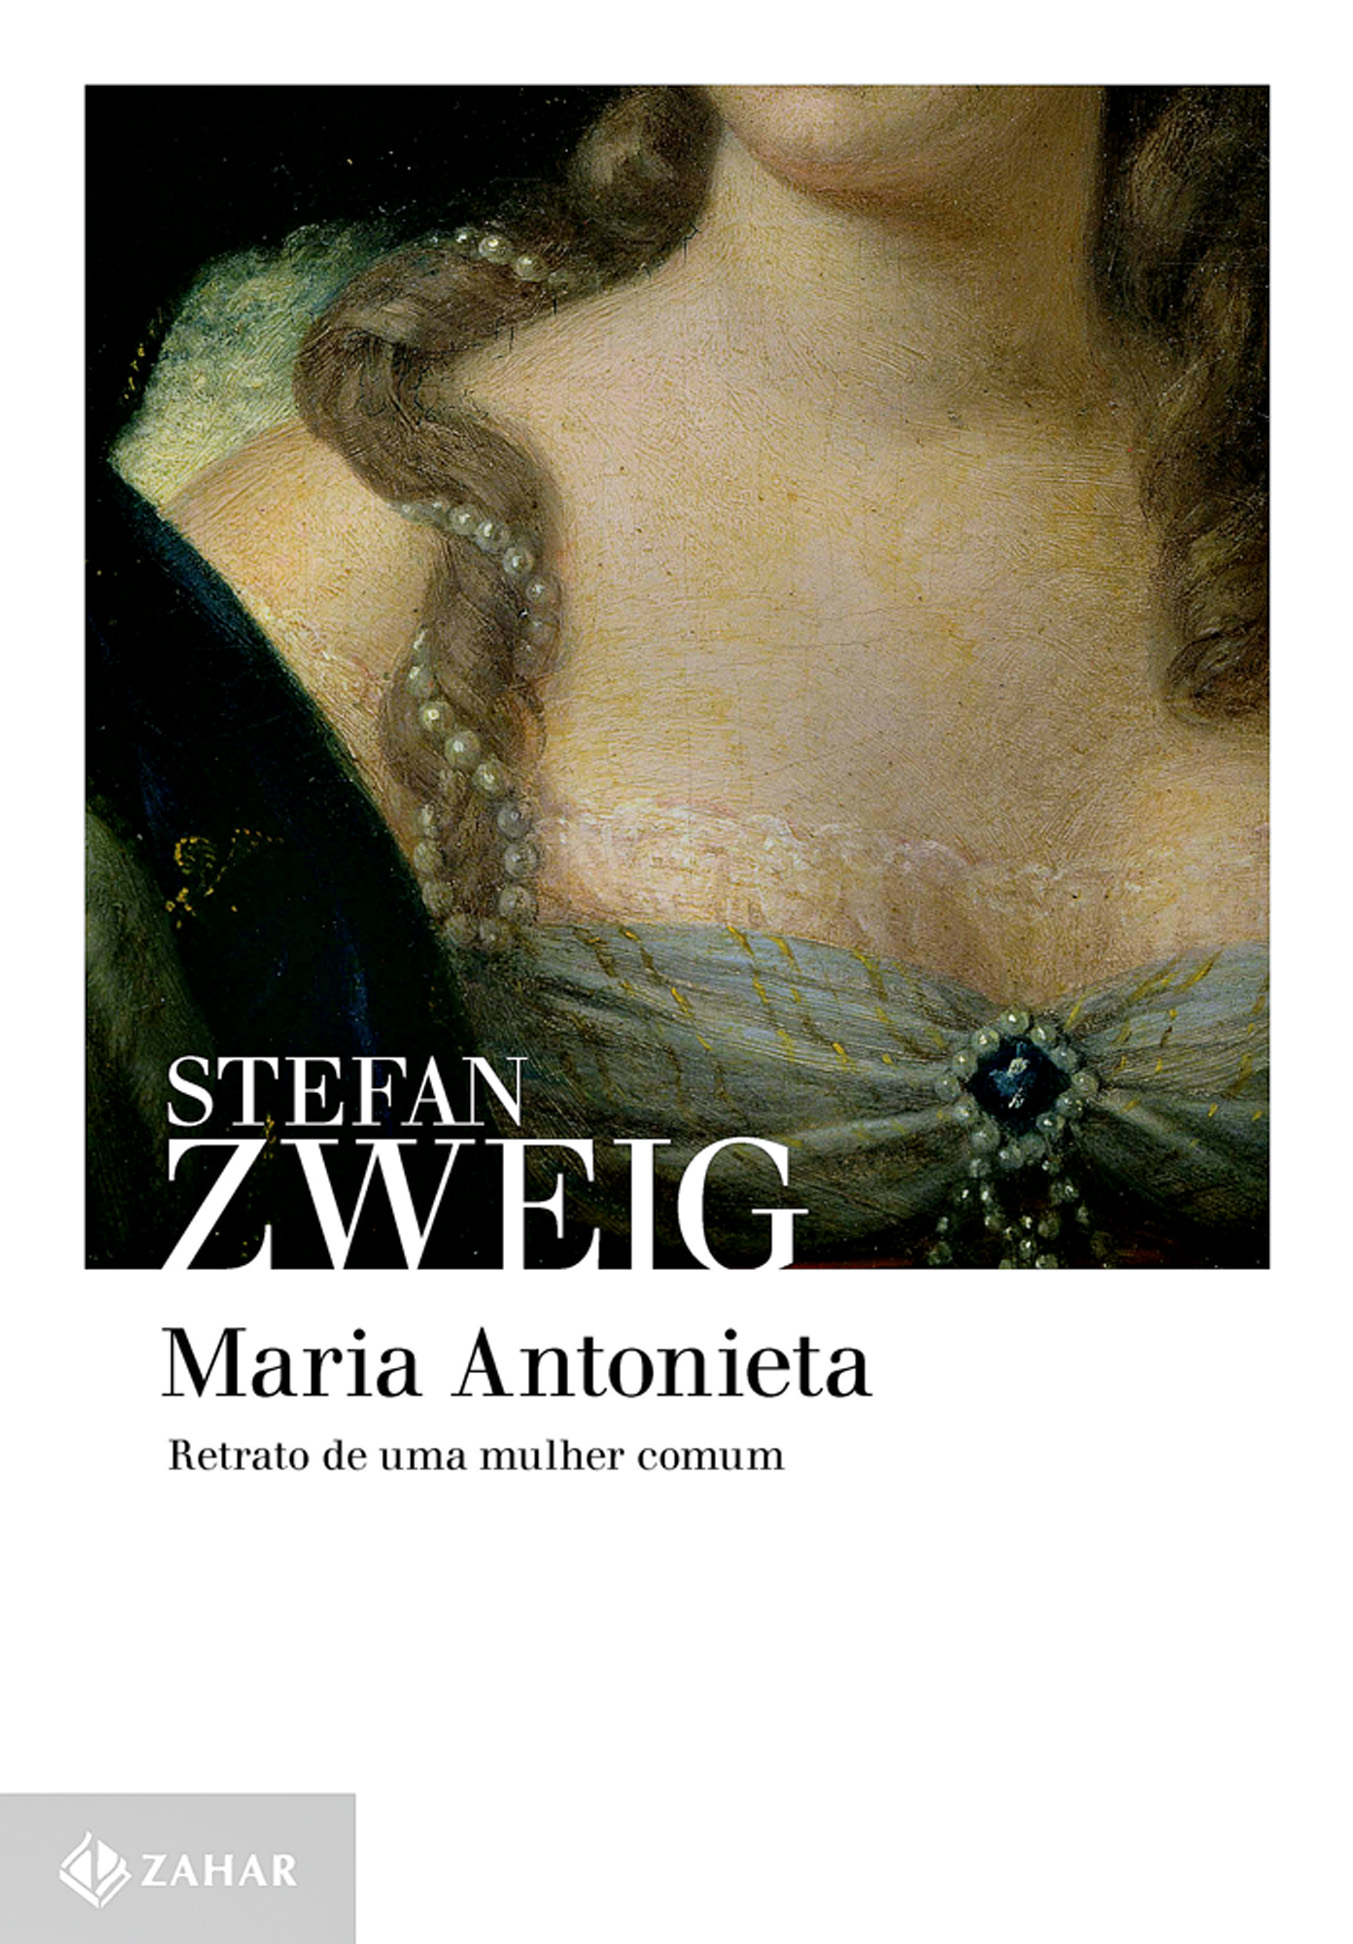 Vai lá: Maria Antonieta – Retrato de uma mulher comum, ed. Zahar, R$ 59,90